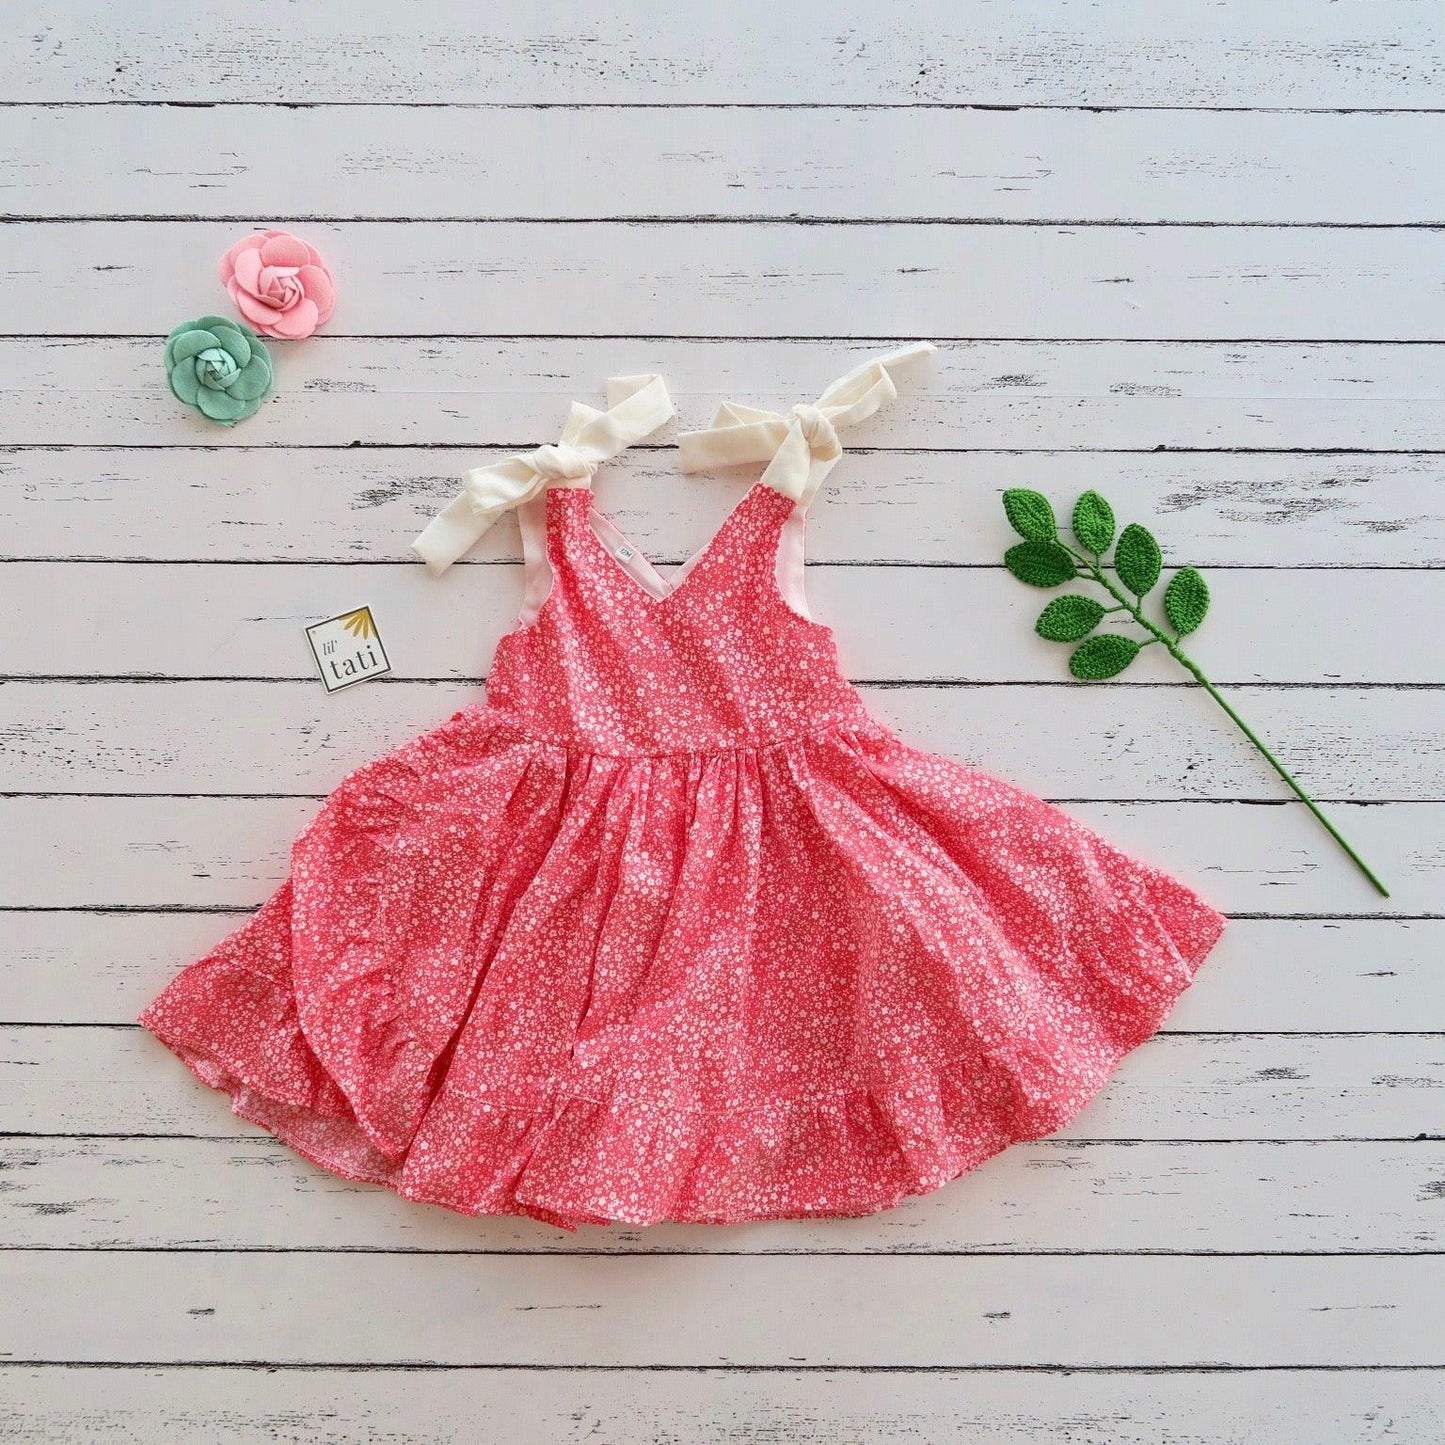 Leila Tie Strap Dress in Mini Flowers Pink - Lil' Tati